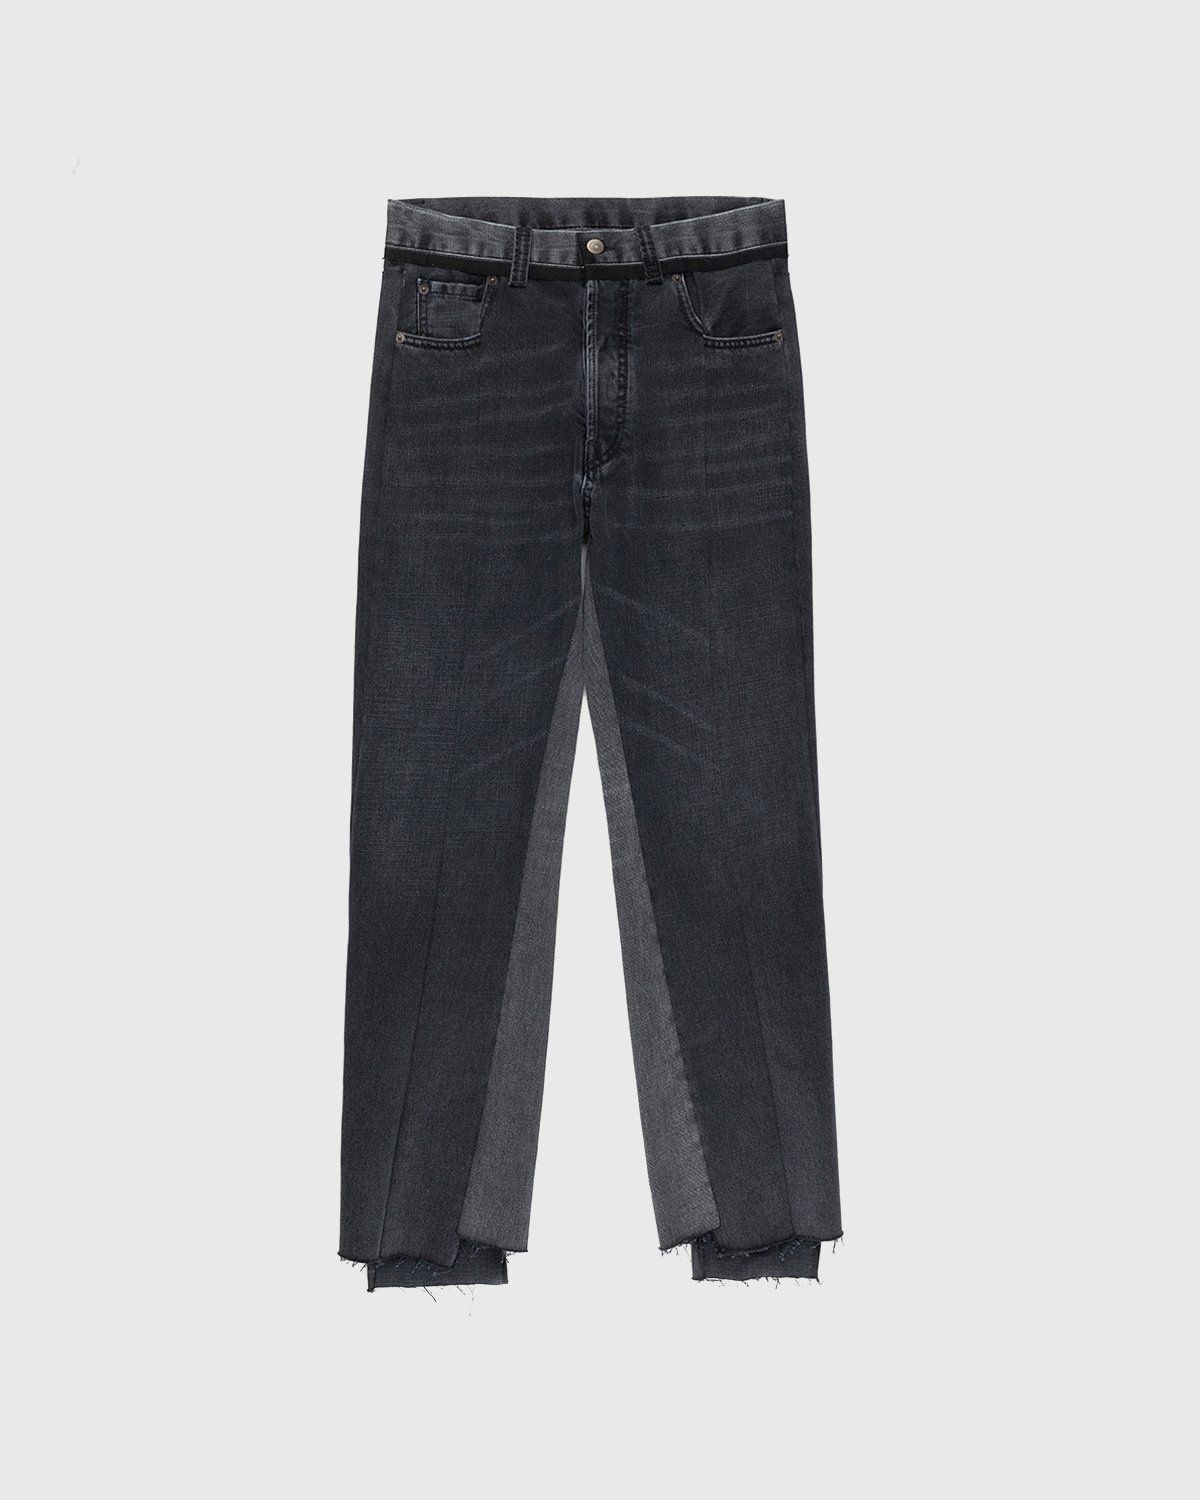 Maison Margiela – Spliced Jeans Black - Pants - Black - Image 1